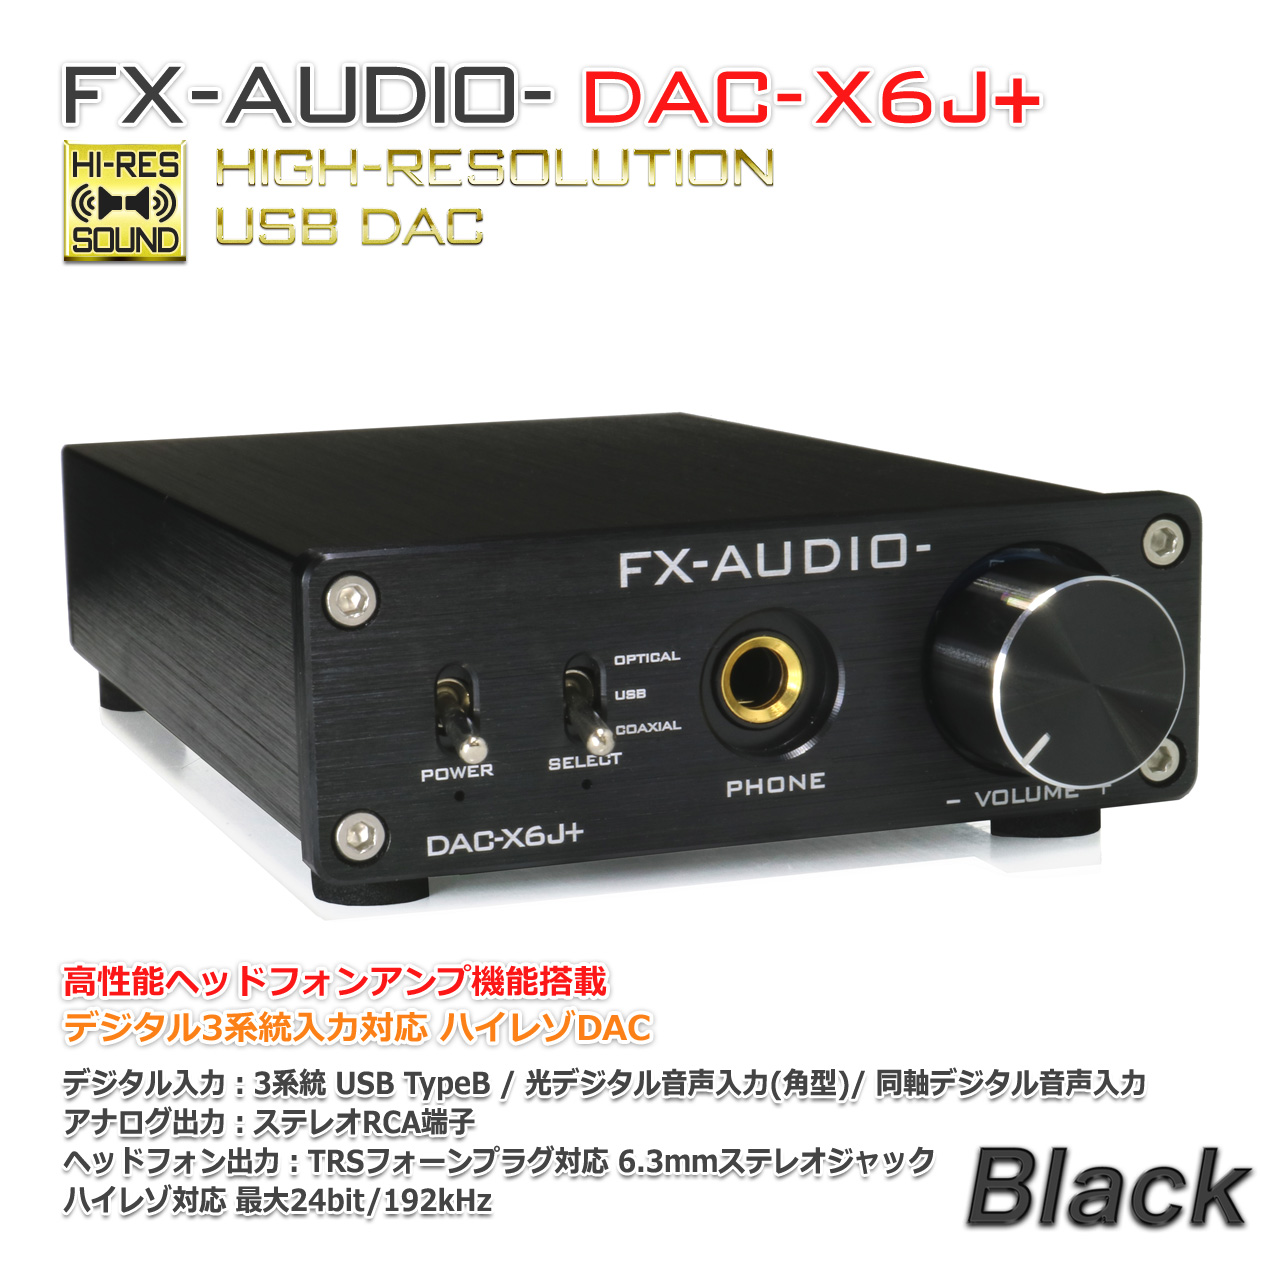 FX-AUDIO- DAC-X6J+[ черный ] высокая эффективность наушники усилитель установка в высоком разрешени DAC свет Opti karu такой же ось цифровой USB максимальный 24bit 192kHz